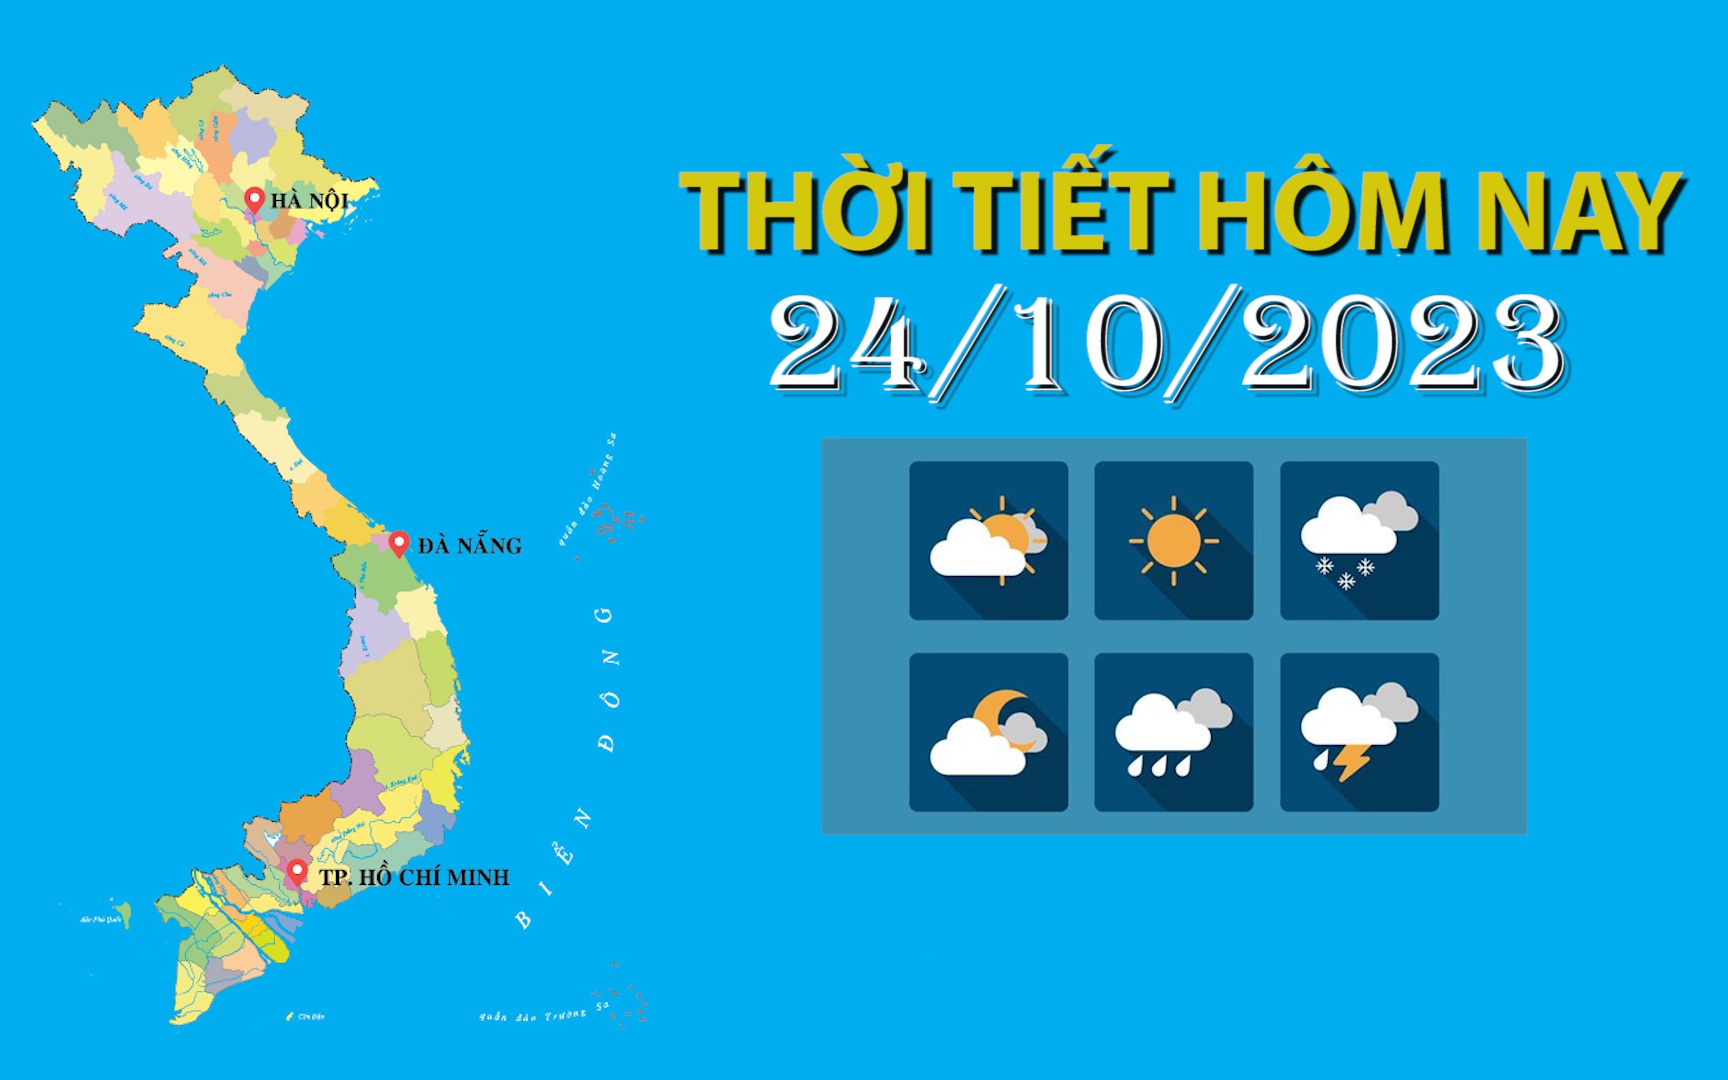 Thời tiết hôm nay 24/10/2023: Bắc Bộ mưa vài nơi, Bắc - Trung Trung Bộ mưa vừa, mưa to và rất to